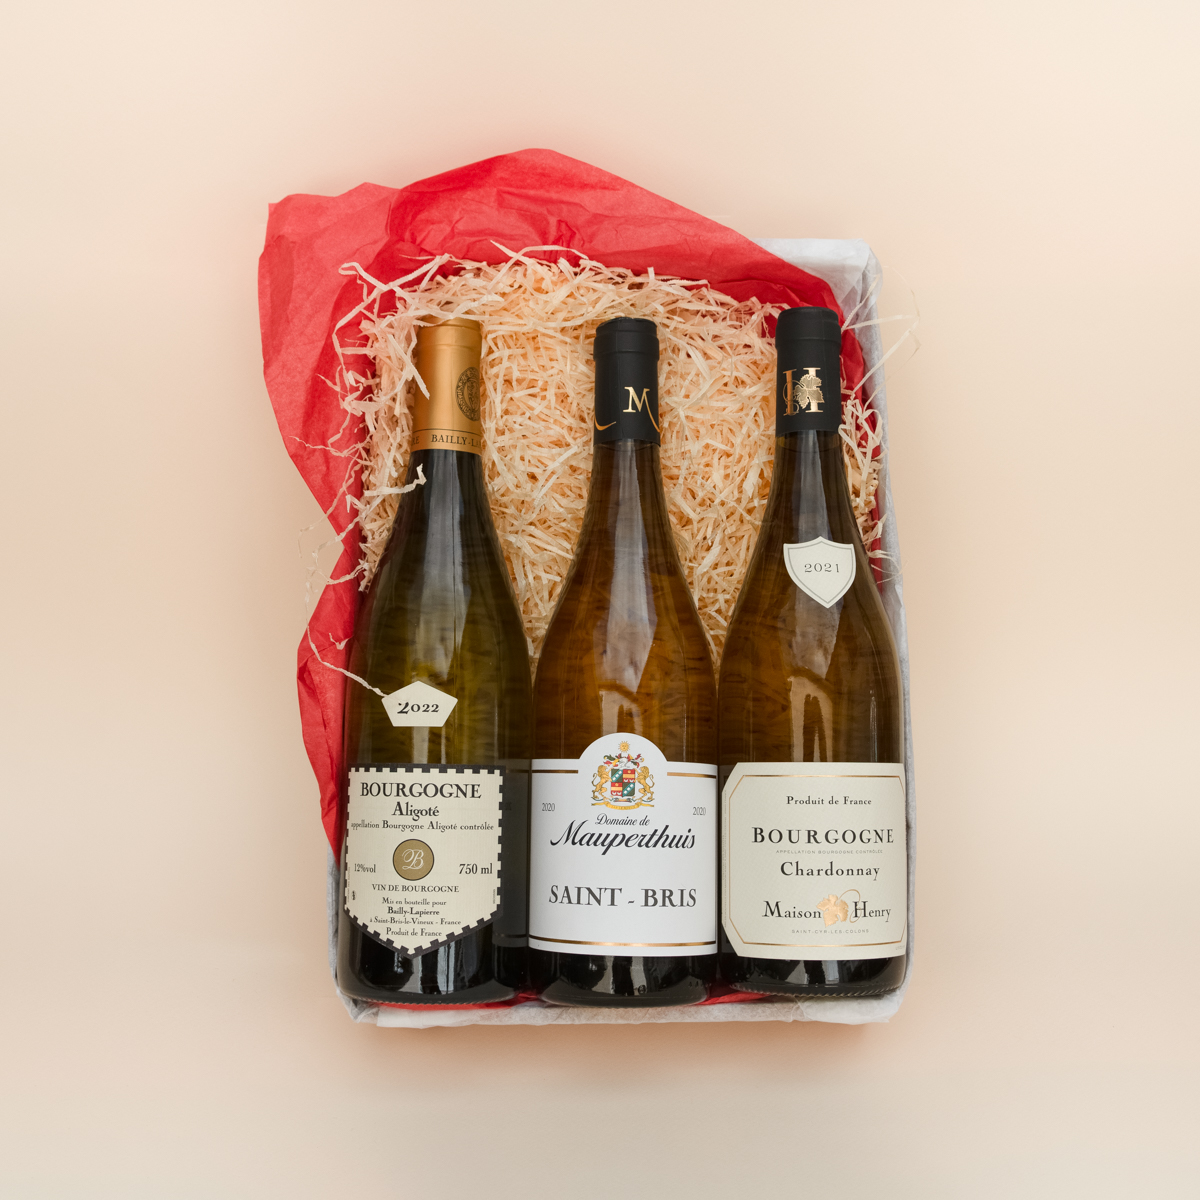 Coffret cadeau composé de 3 vins blancs de Bourgogne : 1 Bourgogne Aligoté, 1 Saint-Bris, 1 Chardonnay